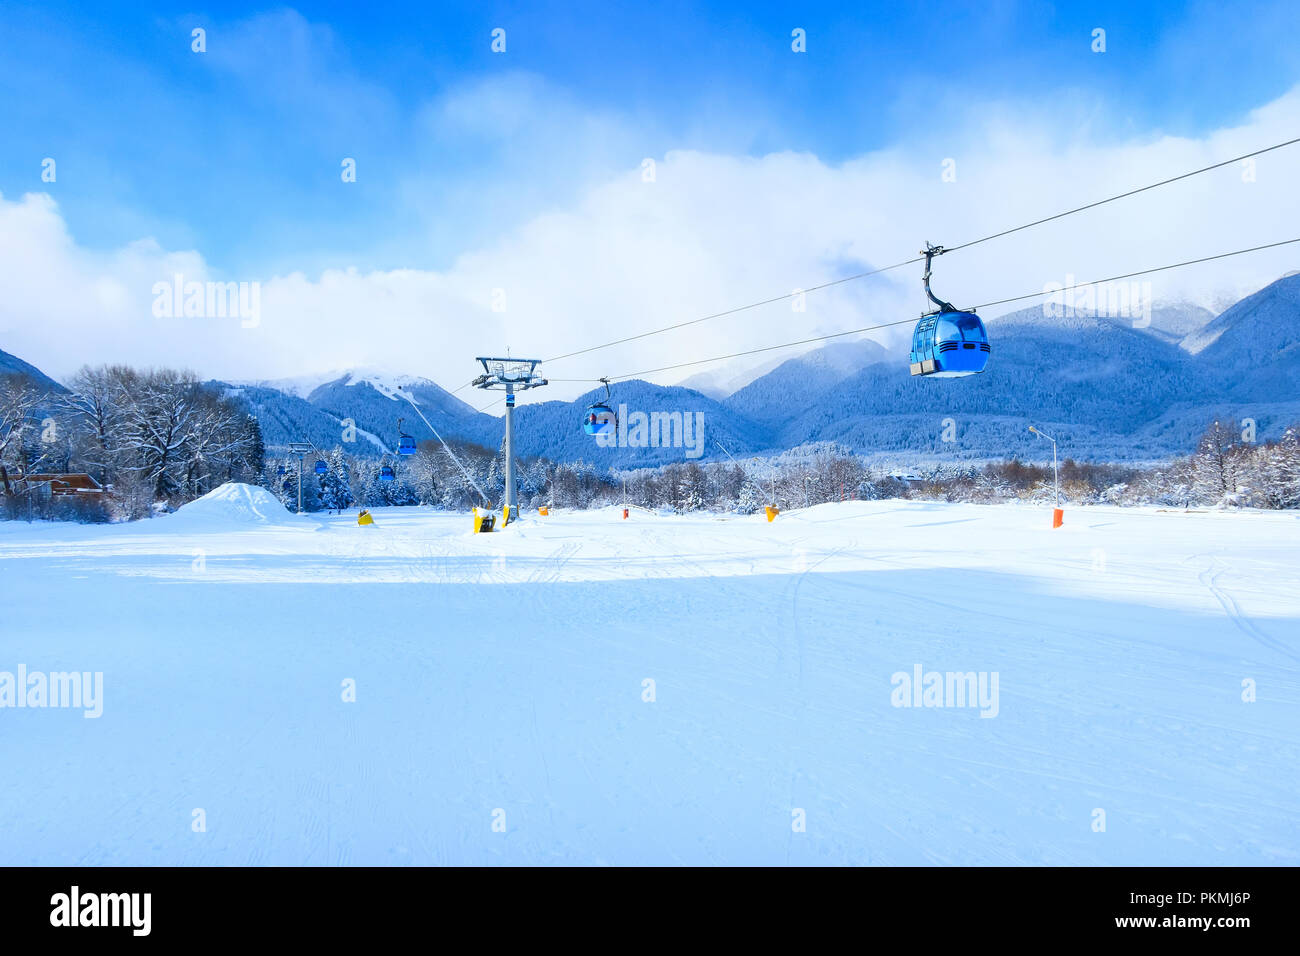 Bansko, Bulgarien Winter Skigebiet mit Skipiste, Gondelbahn Hütten und Berge Stockfoto